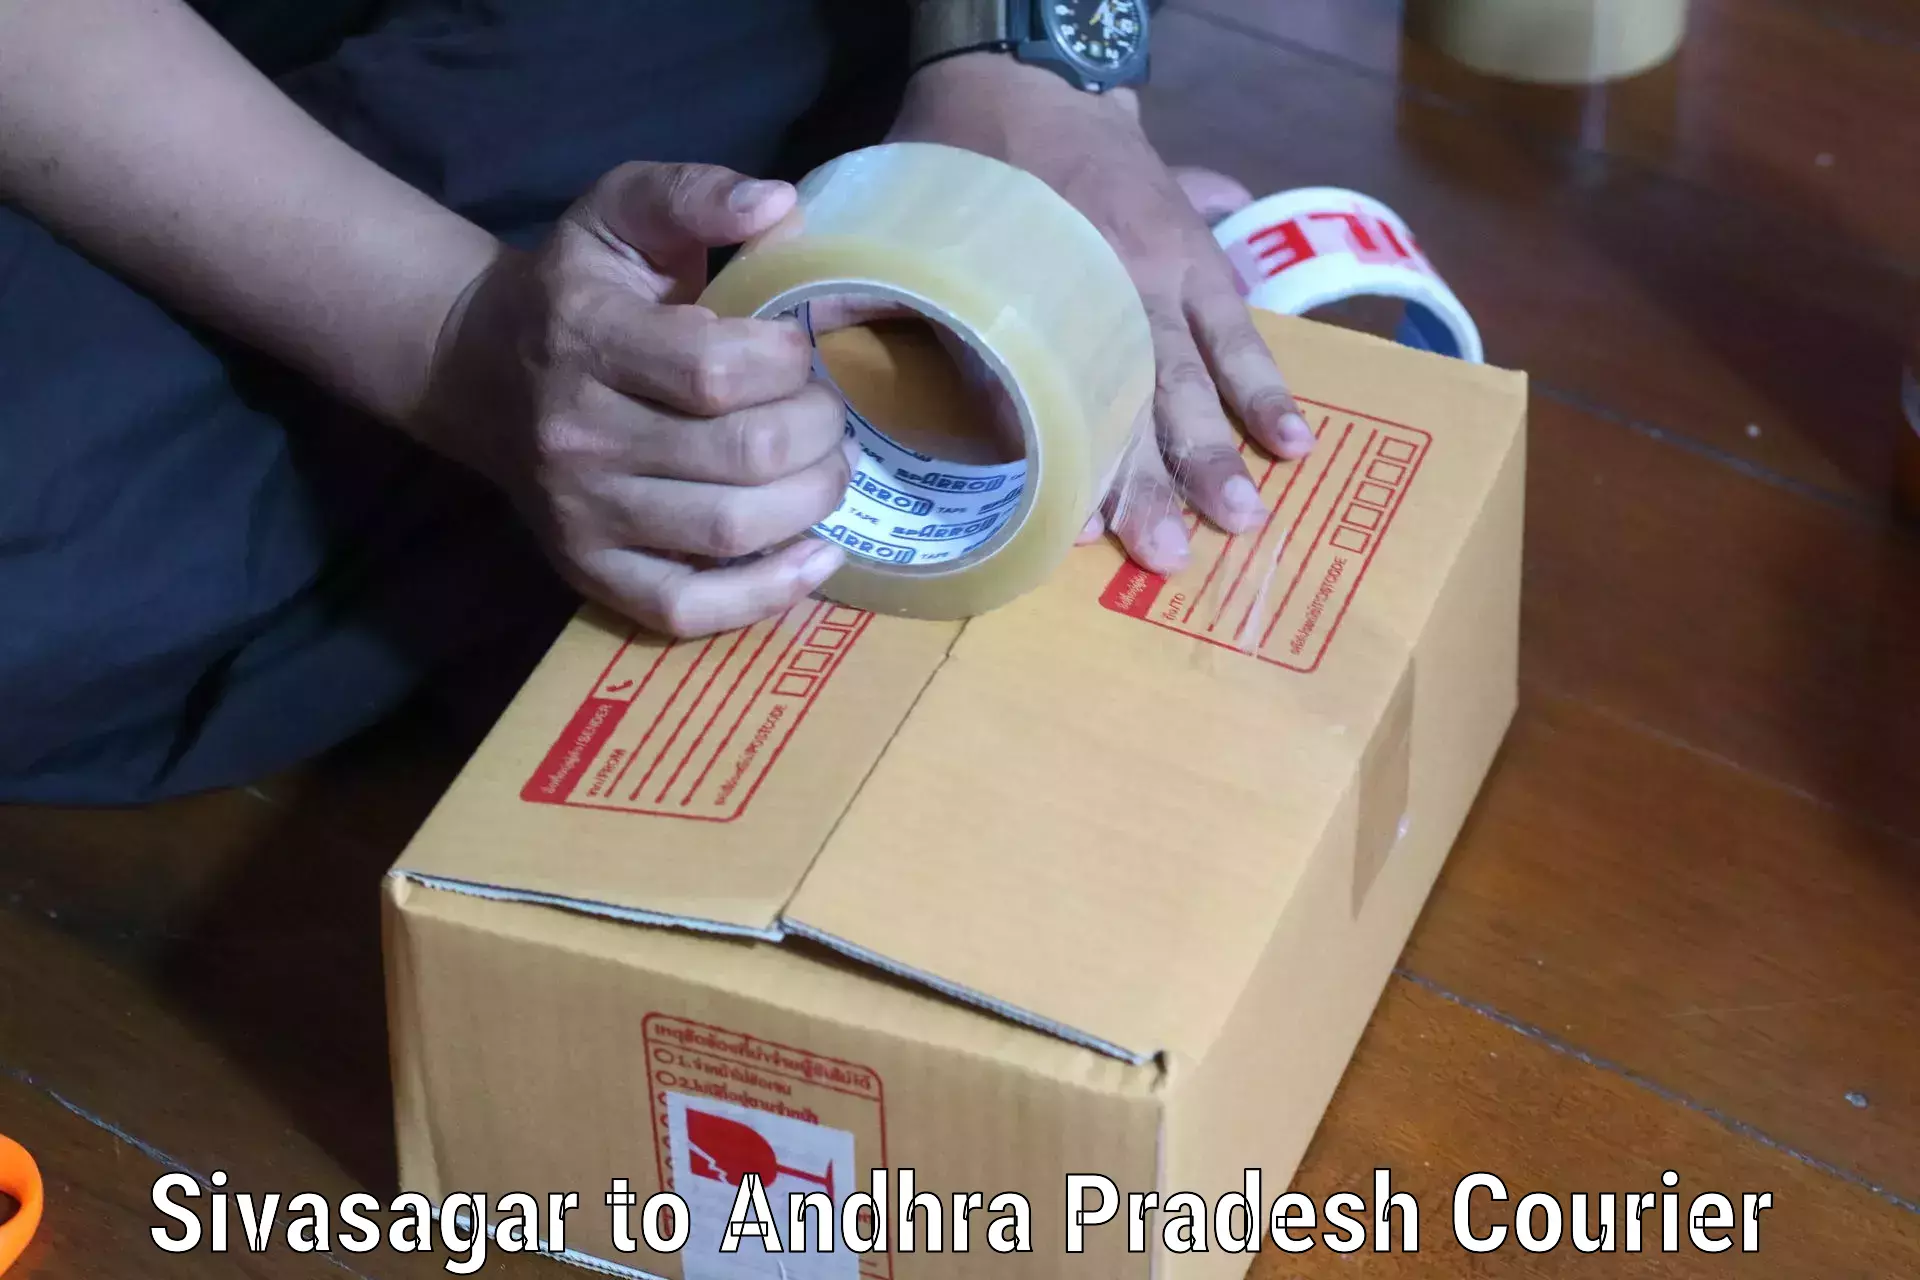 24-hour courier service Sivasagar to Bondapalli